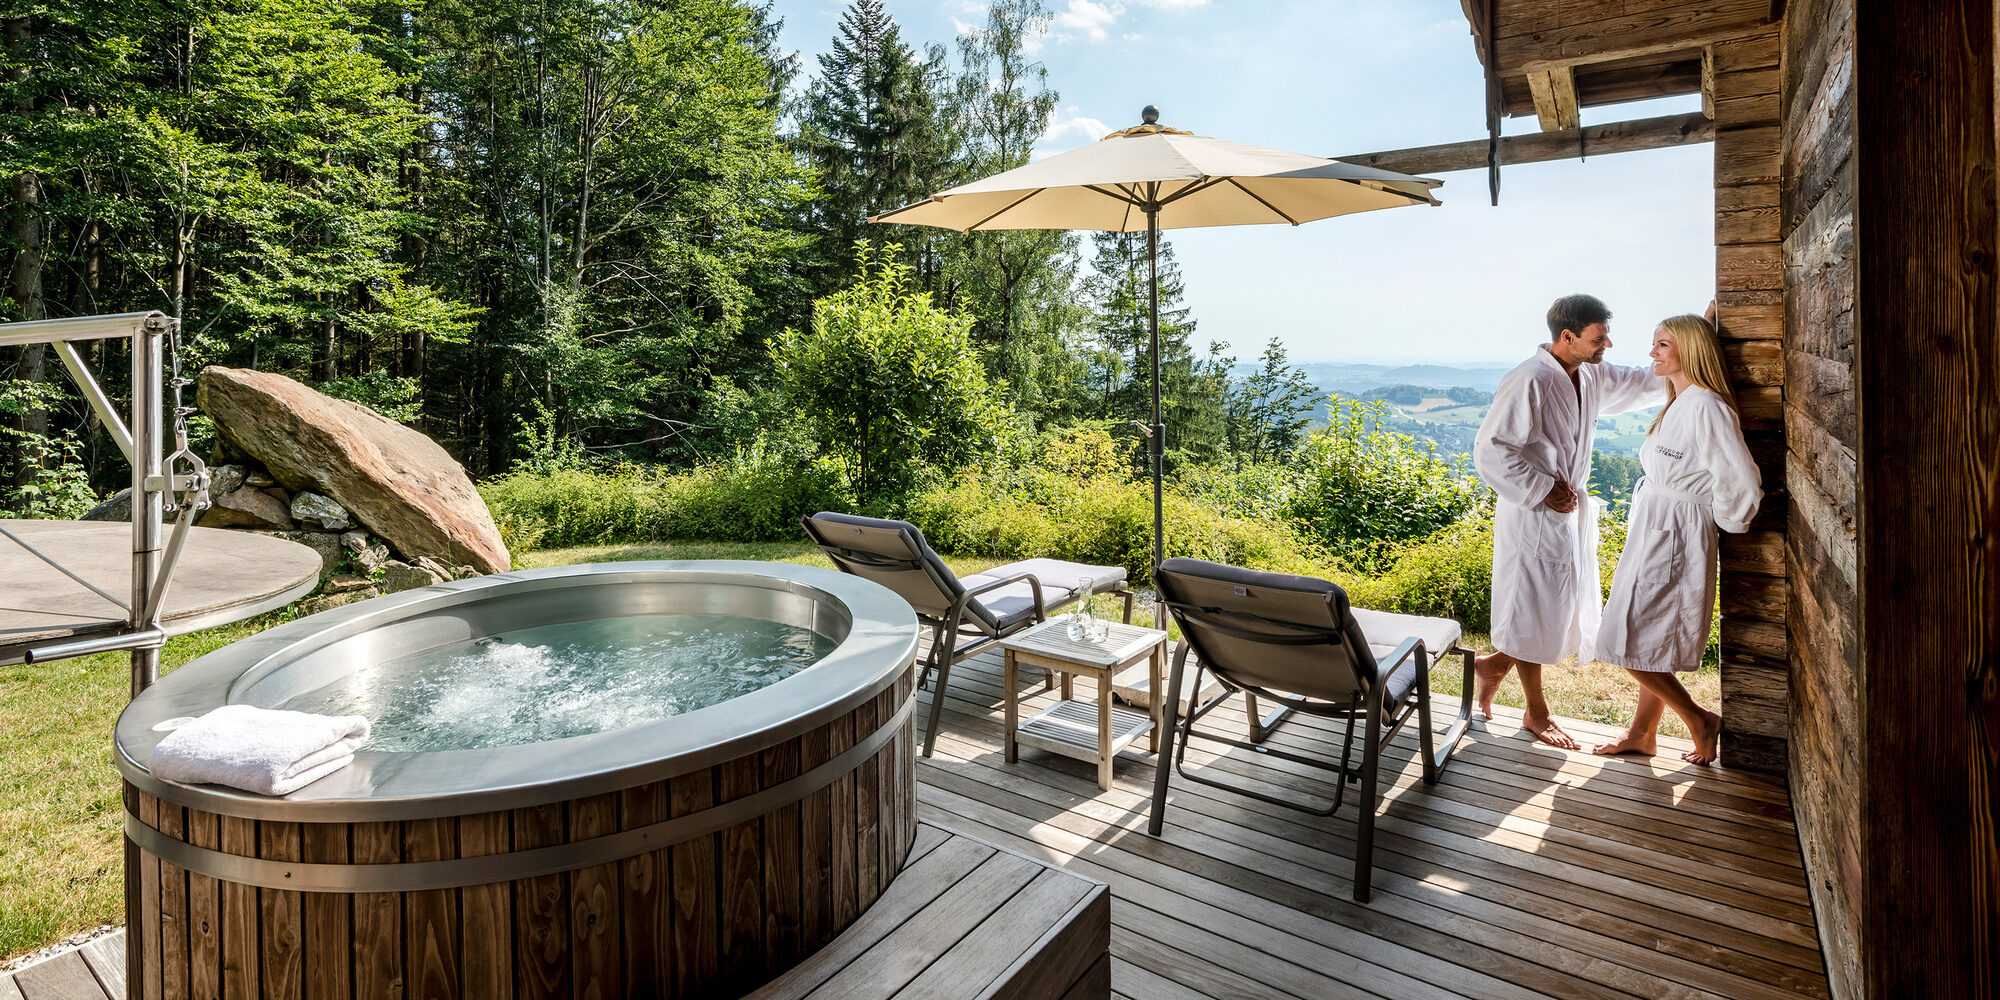 Chalet in Bayern mit romantischer Badewanne